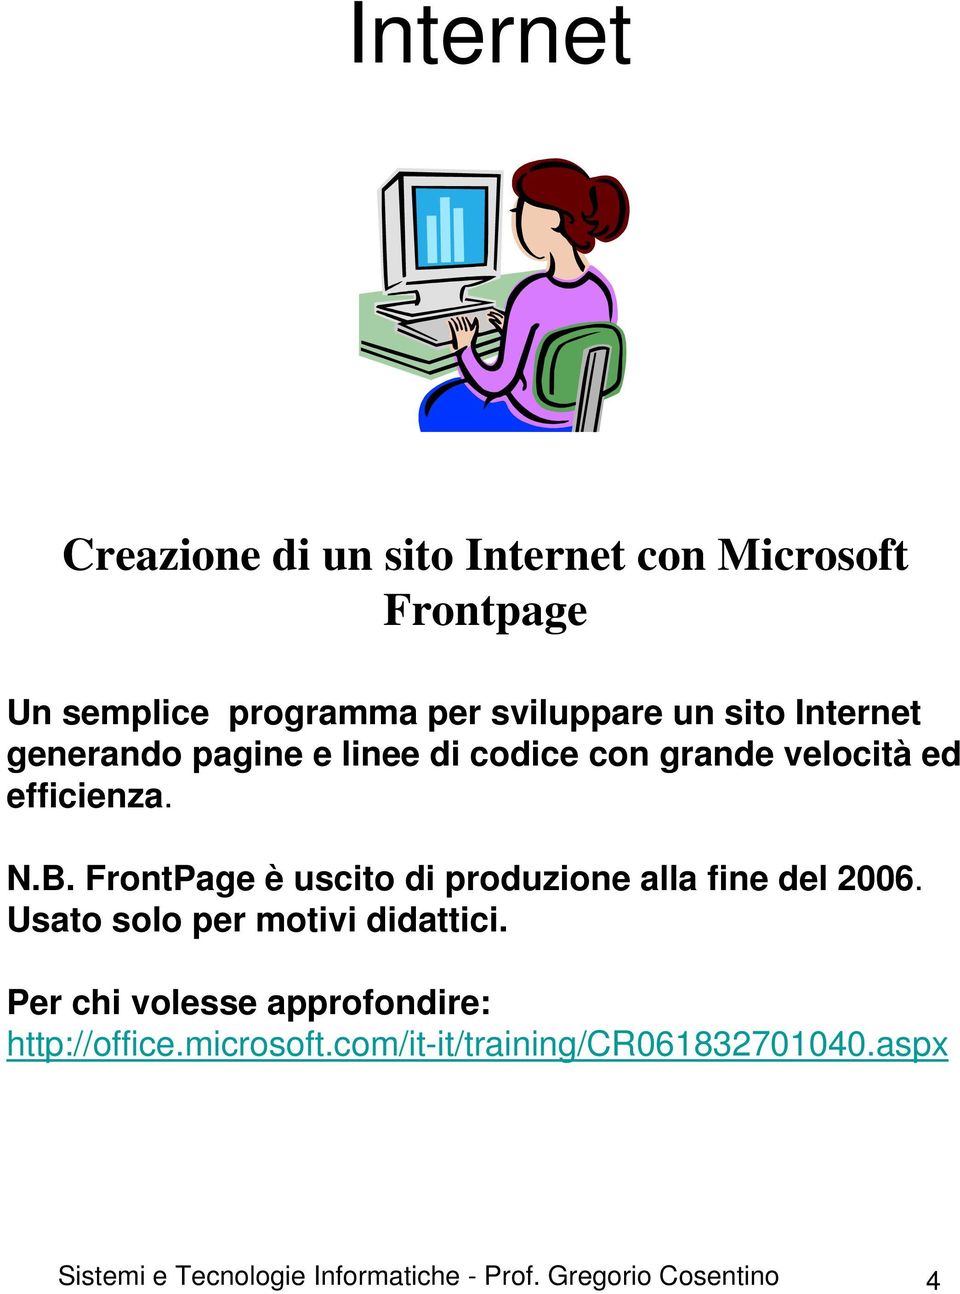 FrontPage è uscito di produzione alla fine del 2006. Usato solo per motivi didattici.